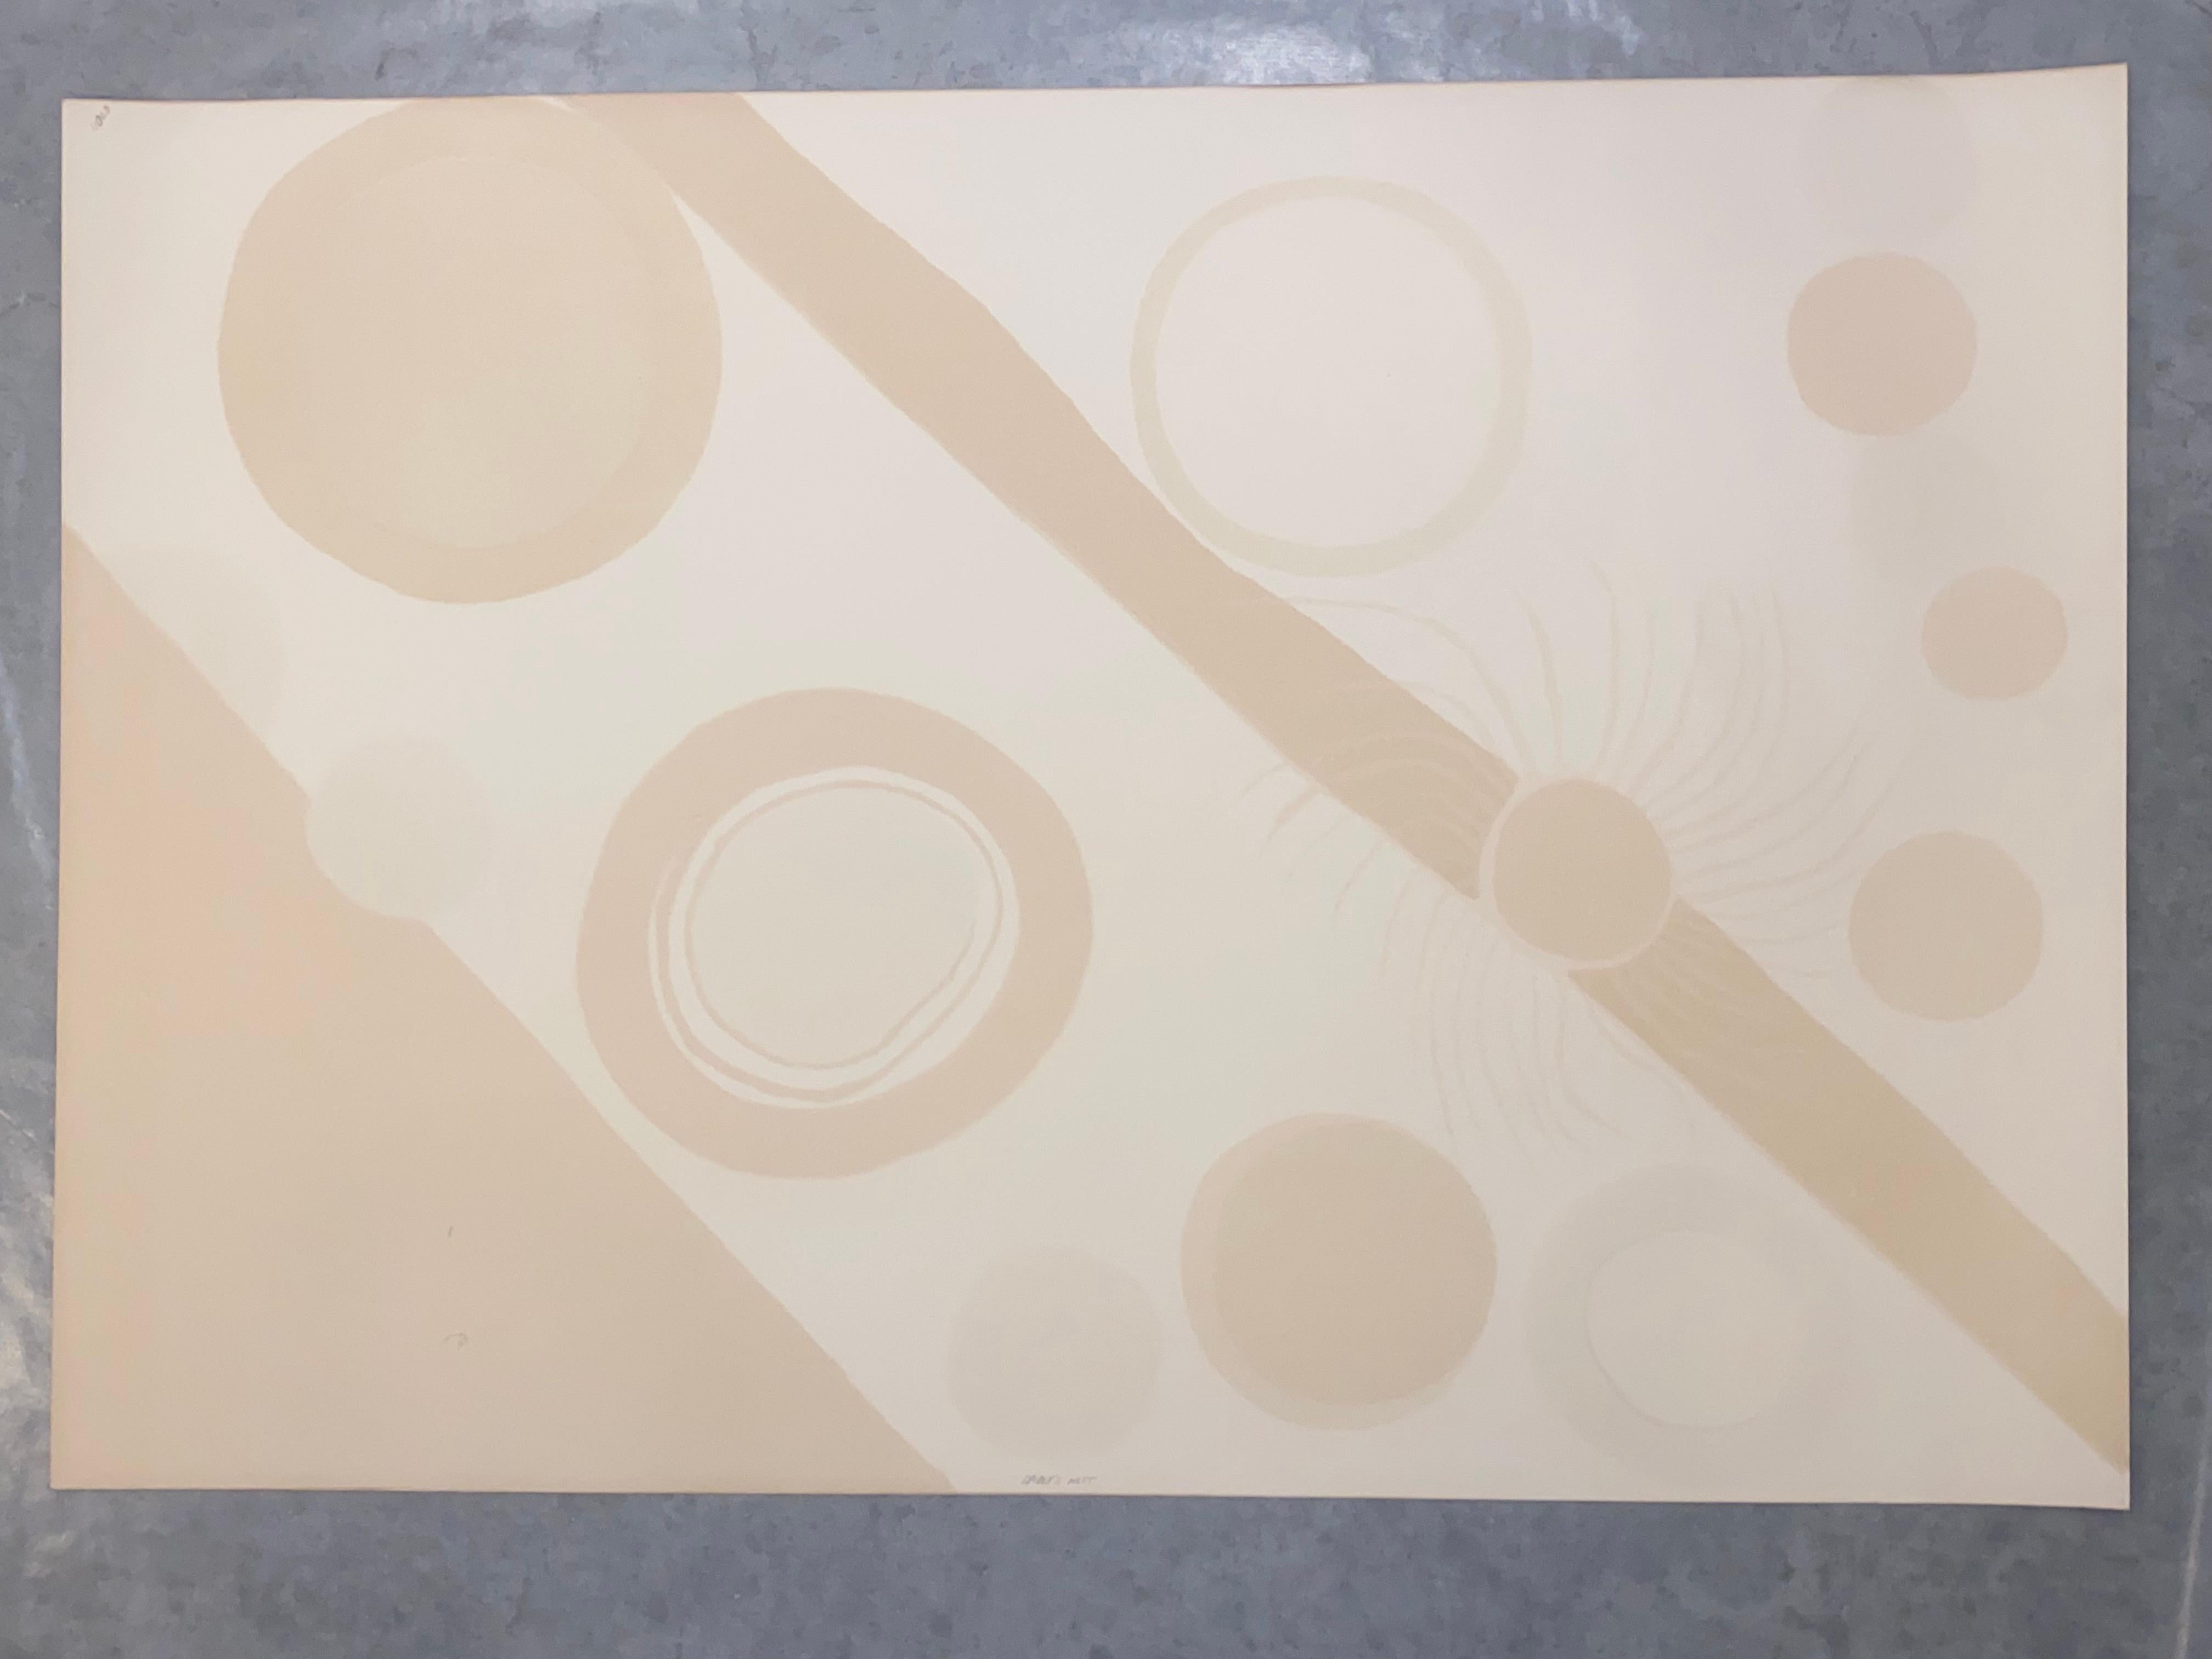 Alexander Calder (Amerikaner, 1898-1976)
Spinnennest, 1975
Unterschrieben: Calder (unten, rechts)
Farblithographie auf Velinpapier
Blattgröße: 29 1/2